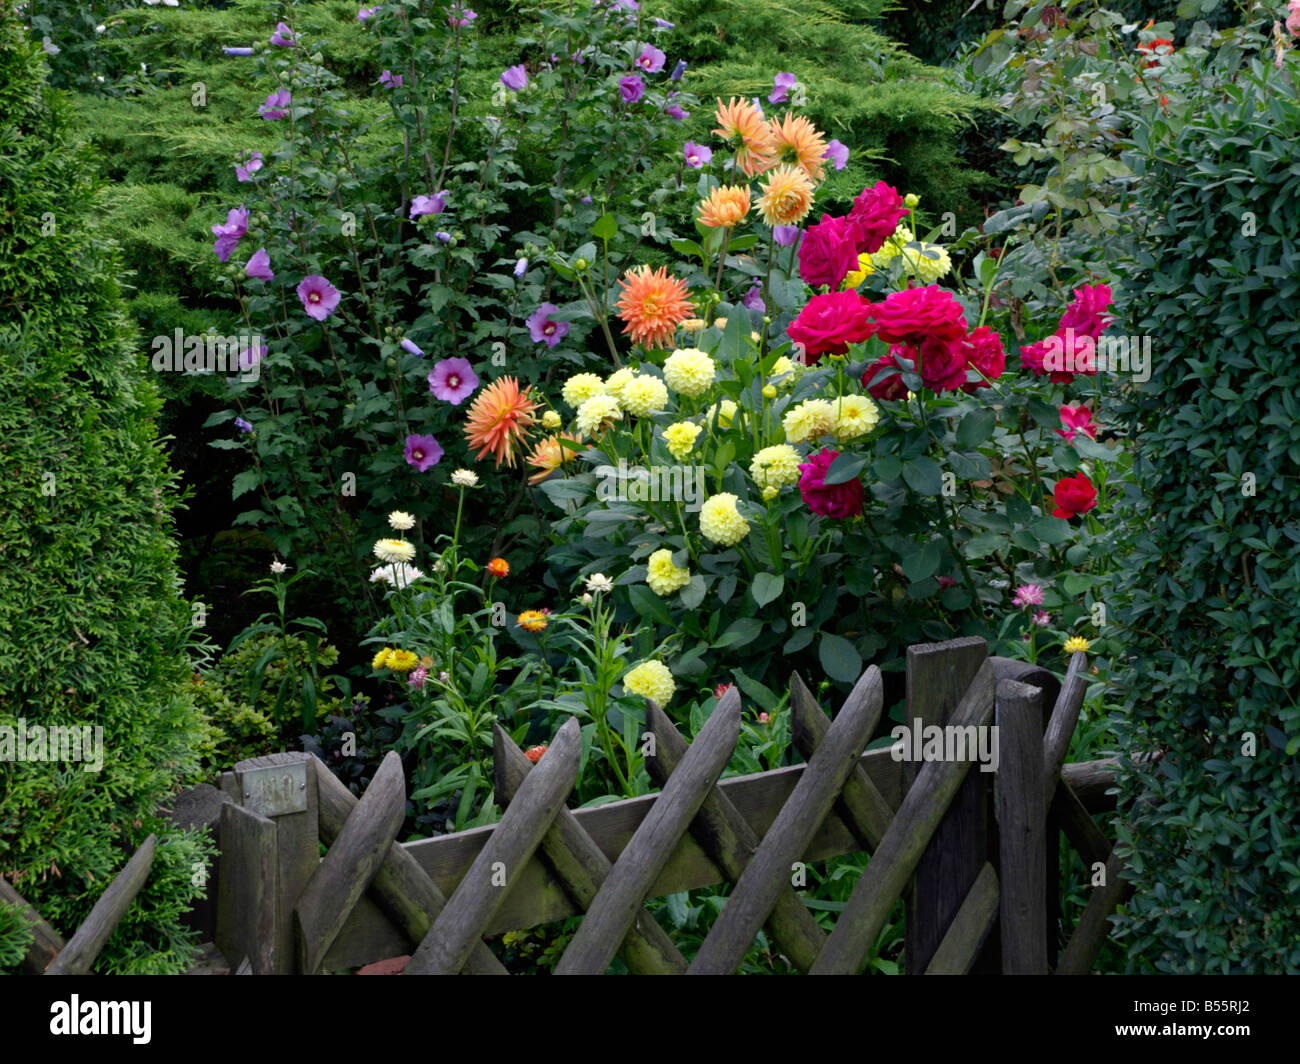 Common hibiscus (Hibiscus syriacus), dahlias (Dahlia) and roses (Rosa) Stock Photo